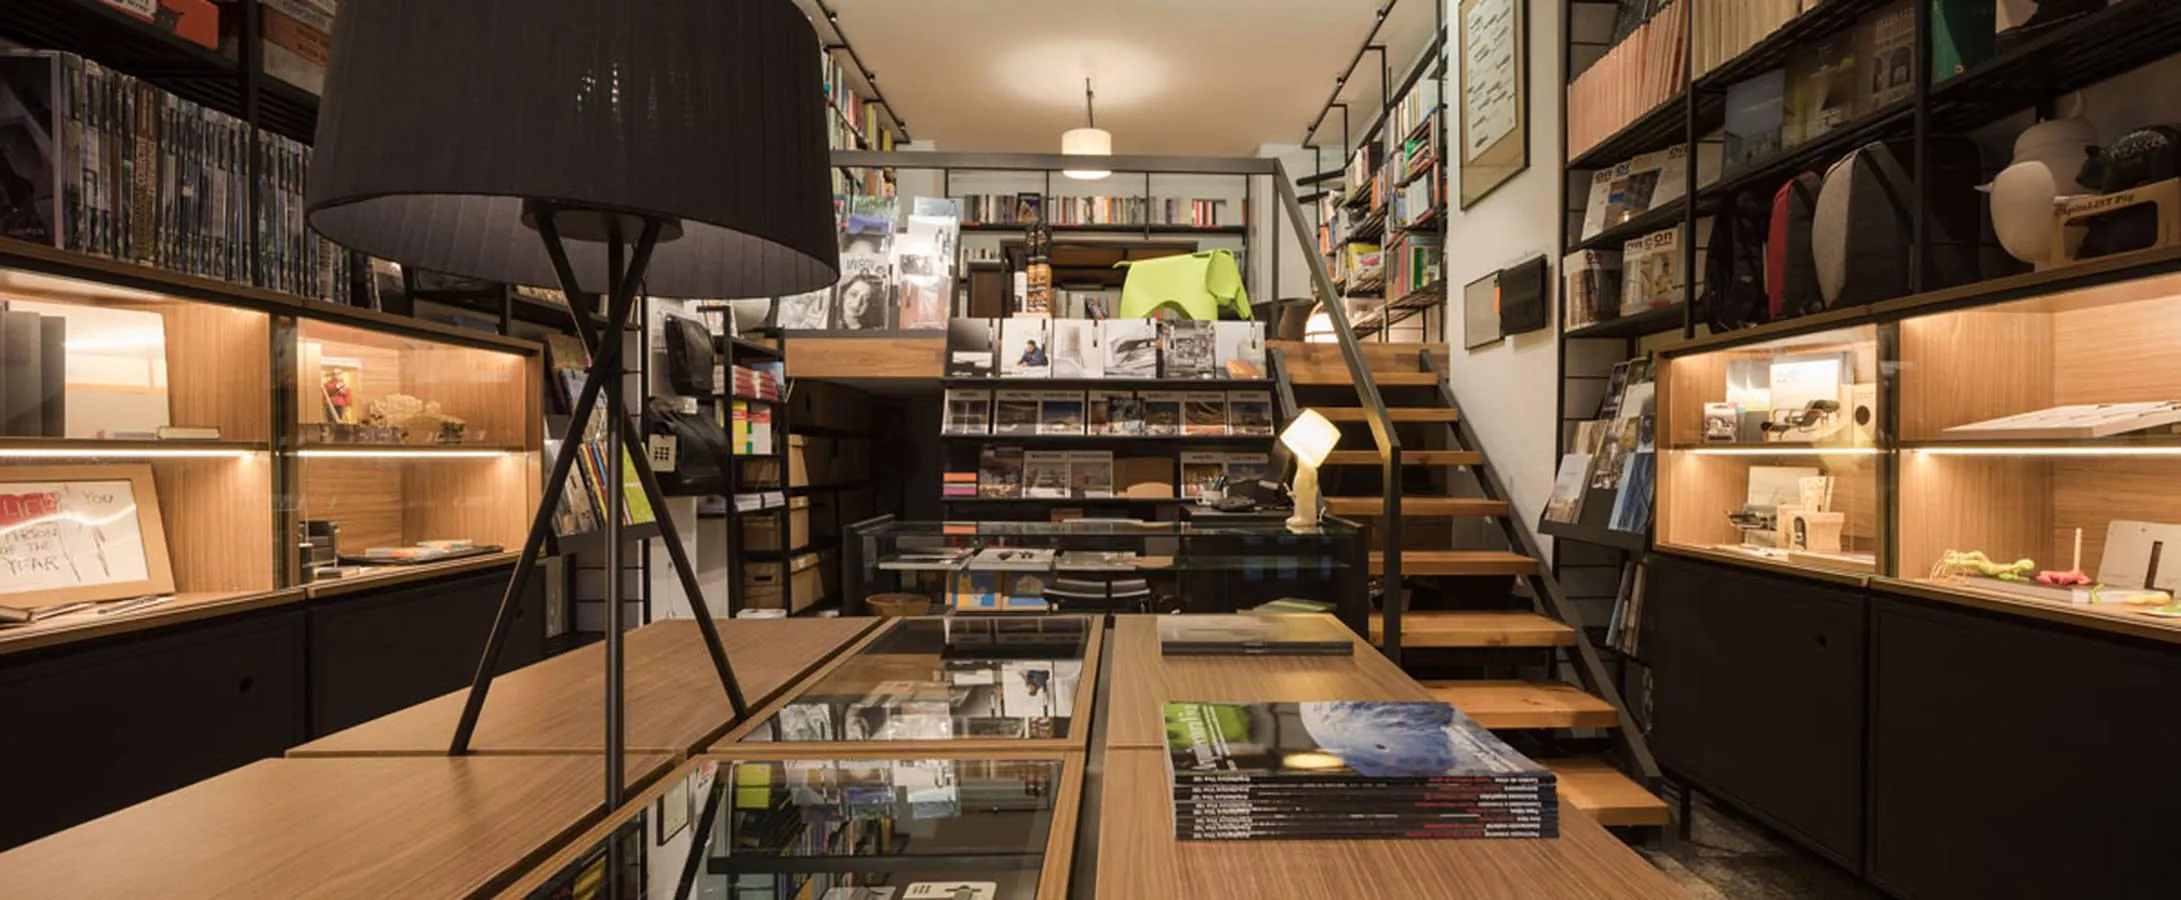 RM Librería, medio siglo de referencia para la arquitectura